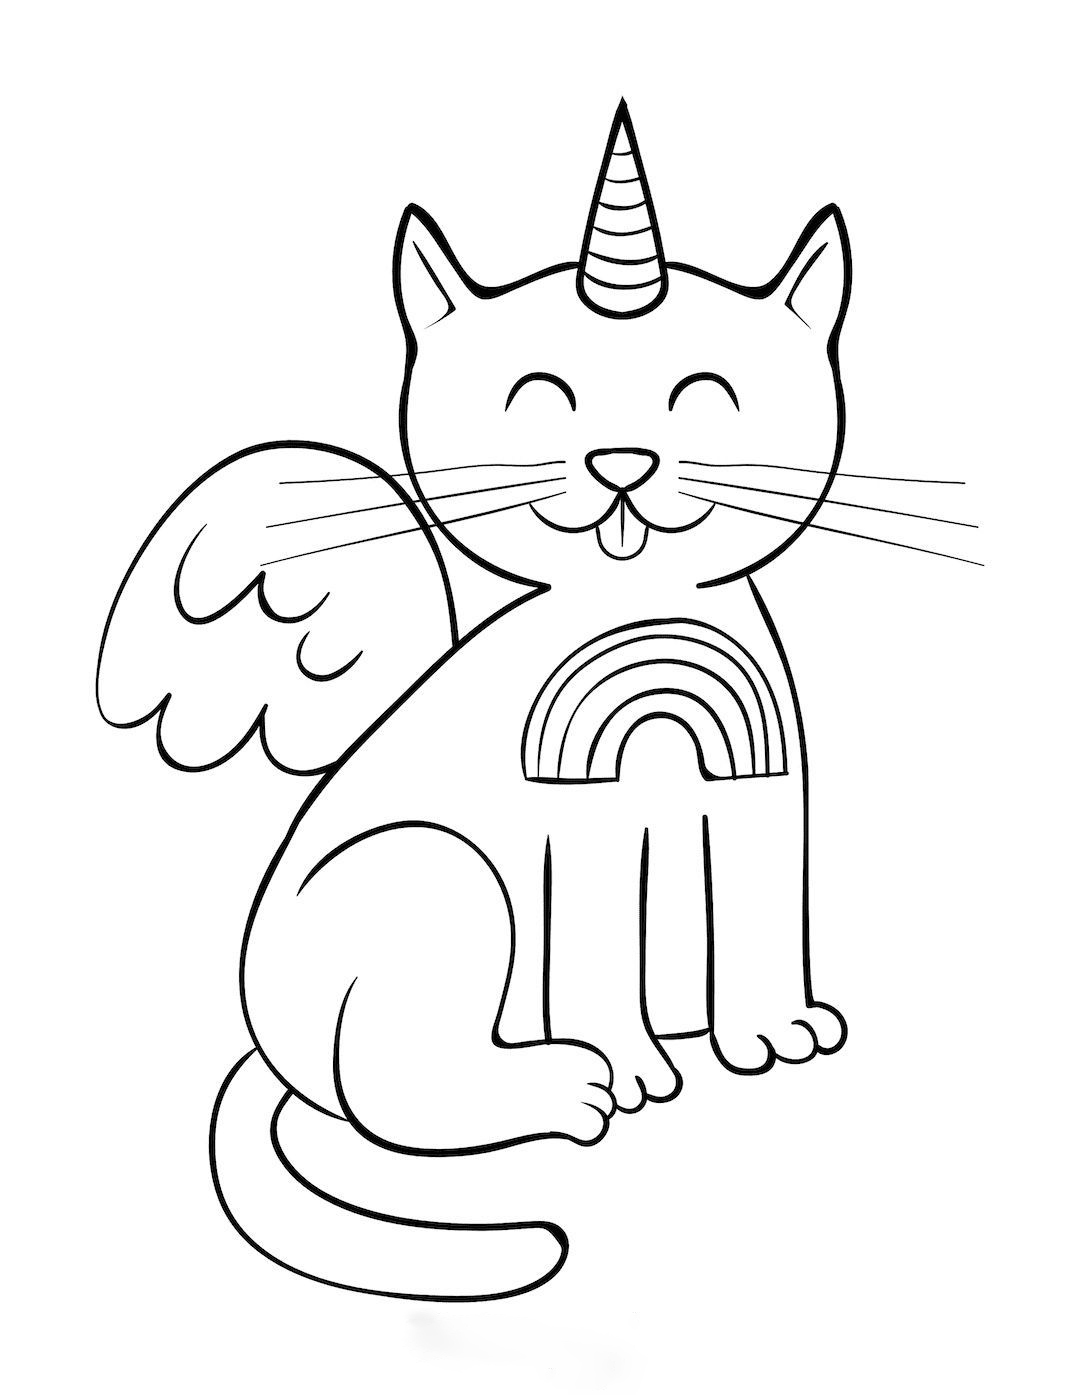 Einhornkatze mit Flügeln von Unicorn Cat